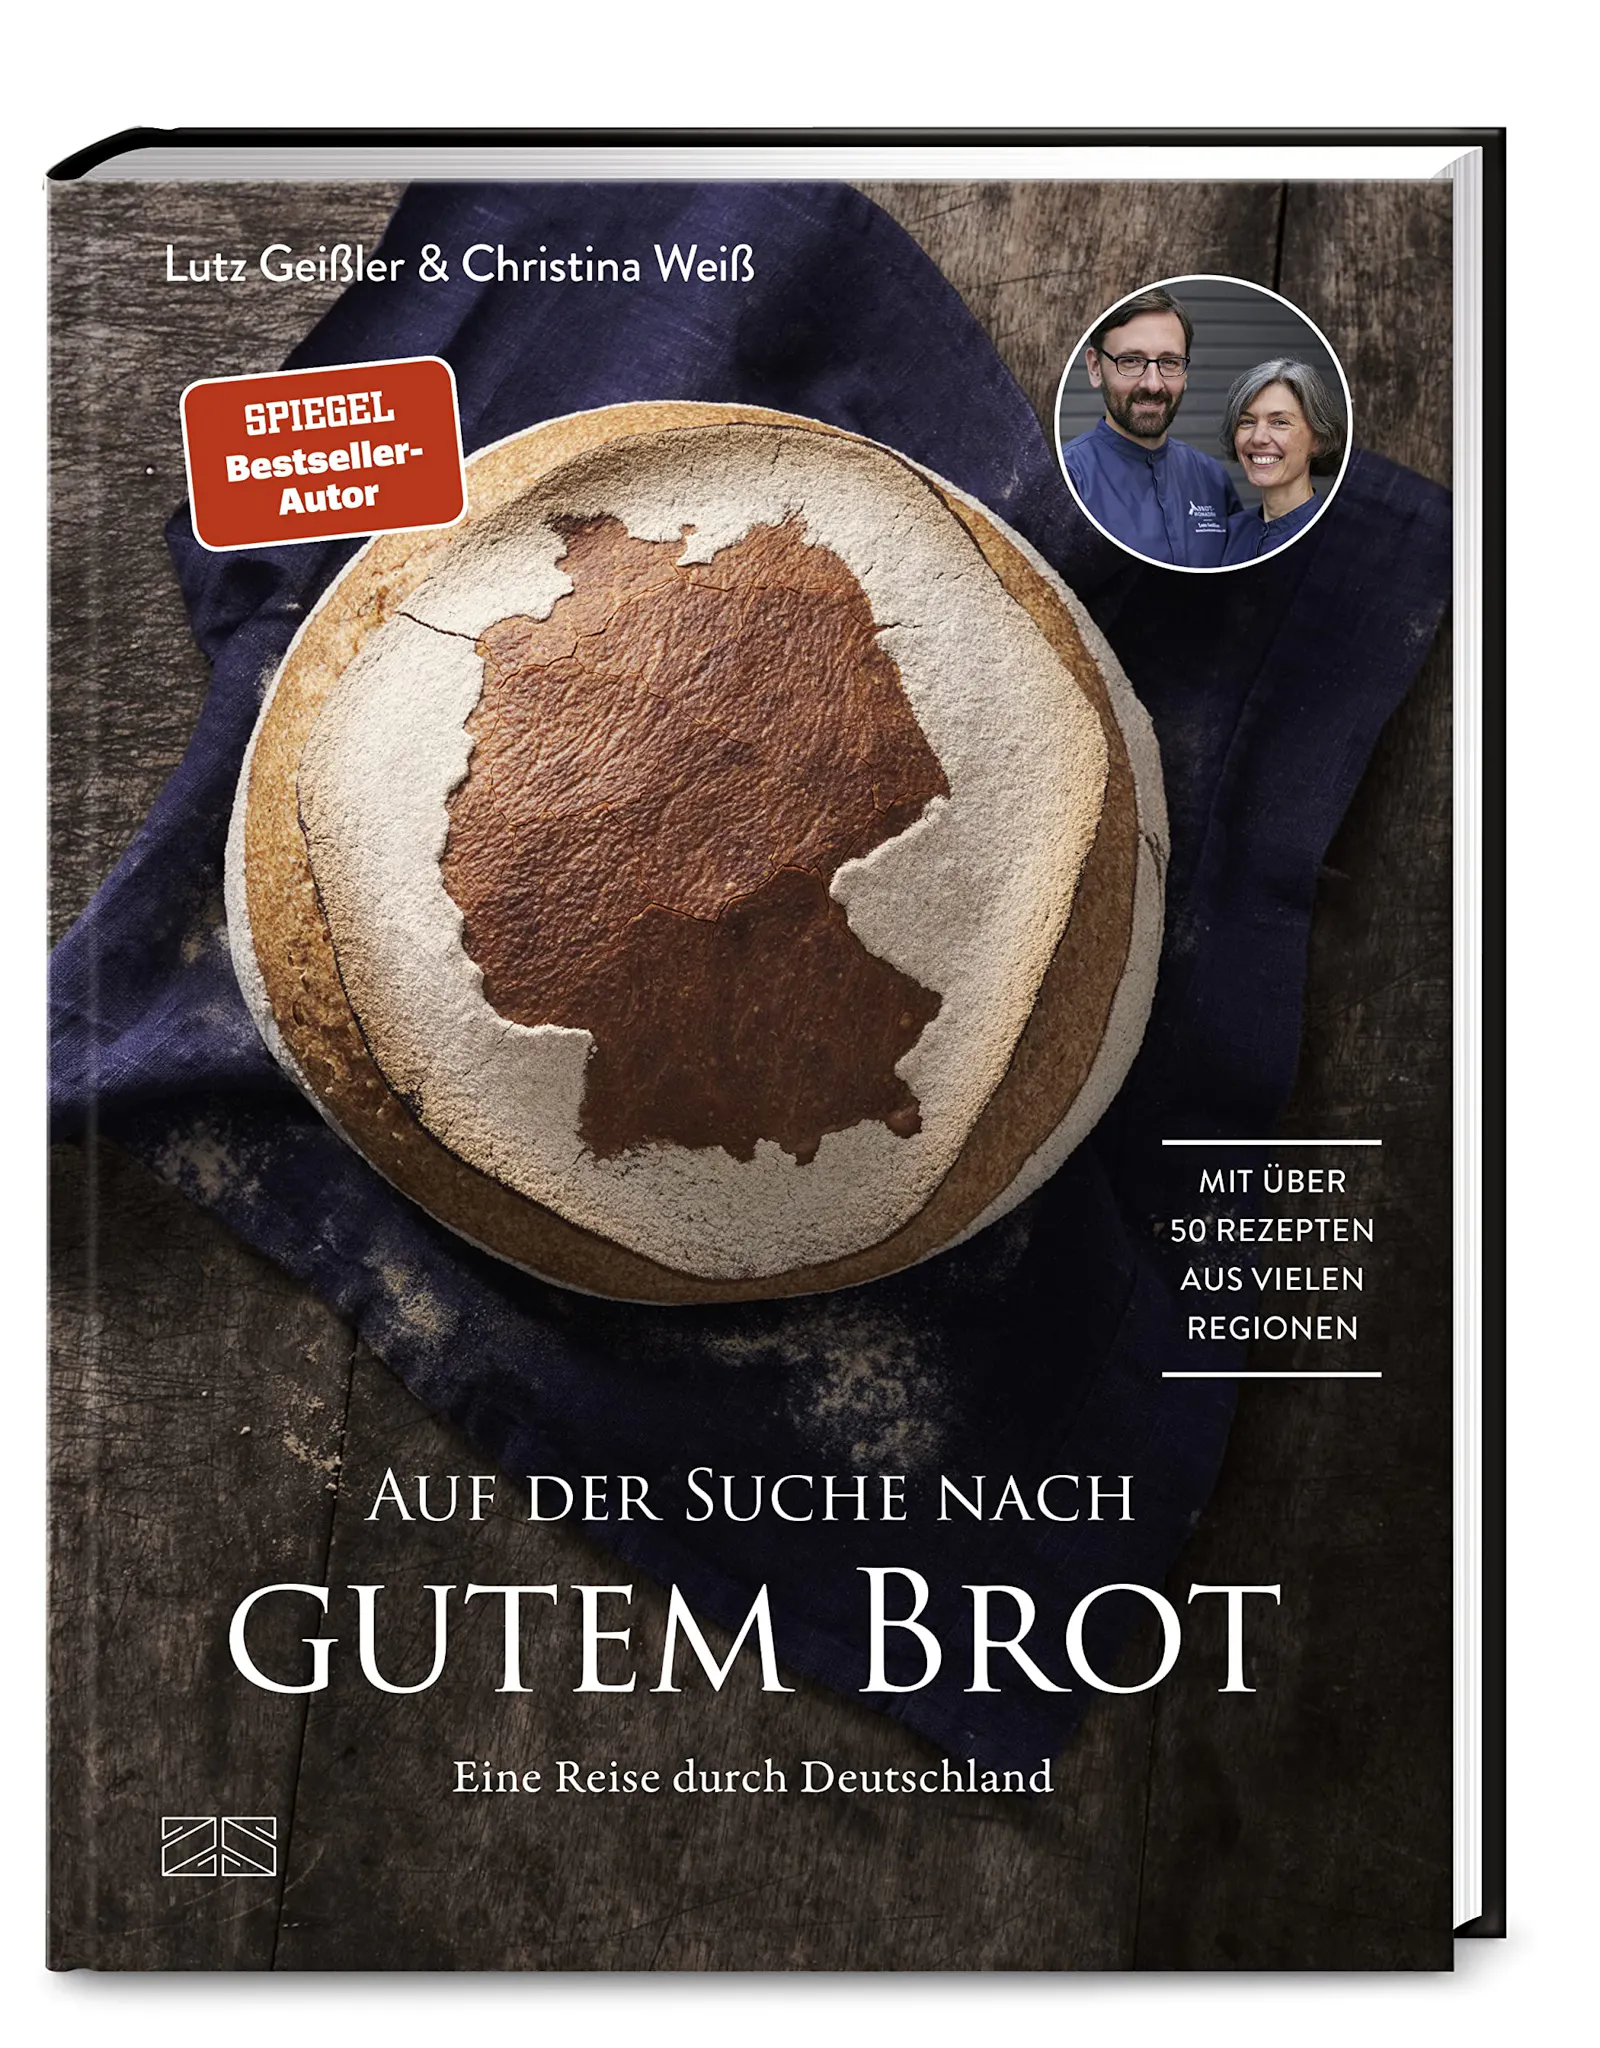 Cover des Buches "Auf der Suche nach gutem Brot" von Lutz Geißler und Christina Weiß